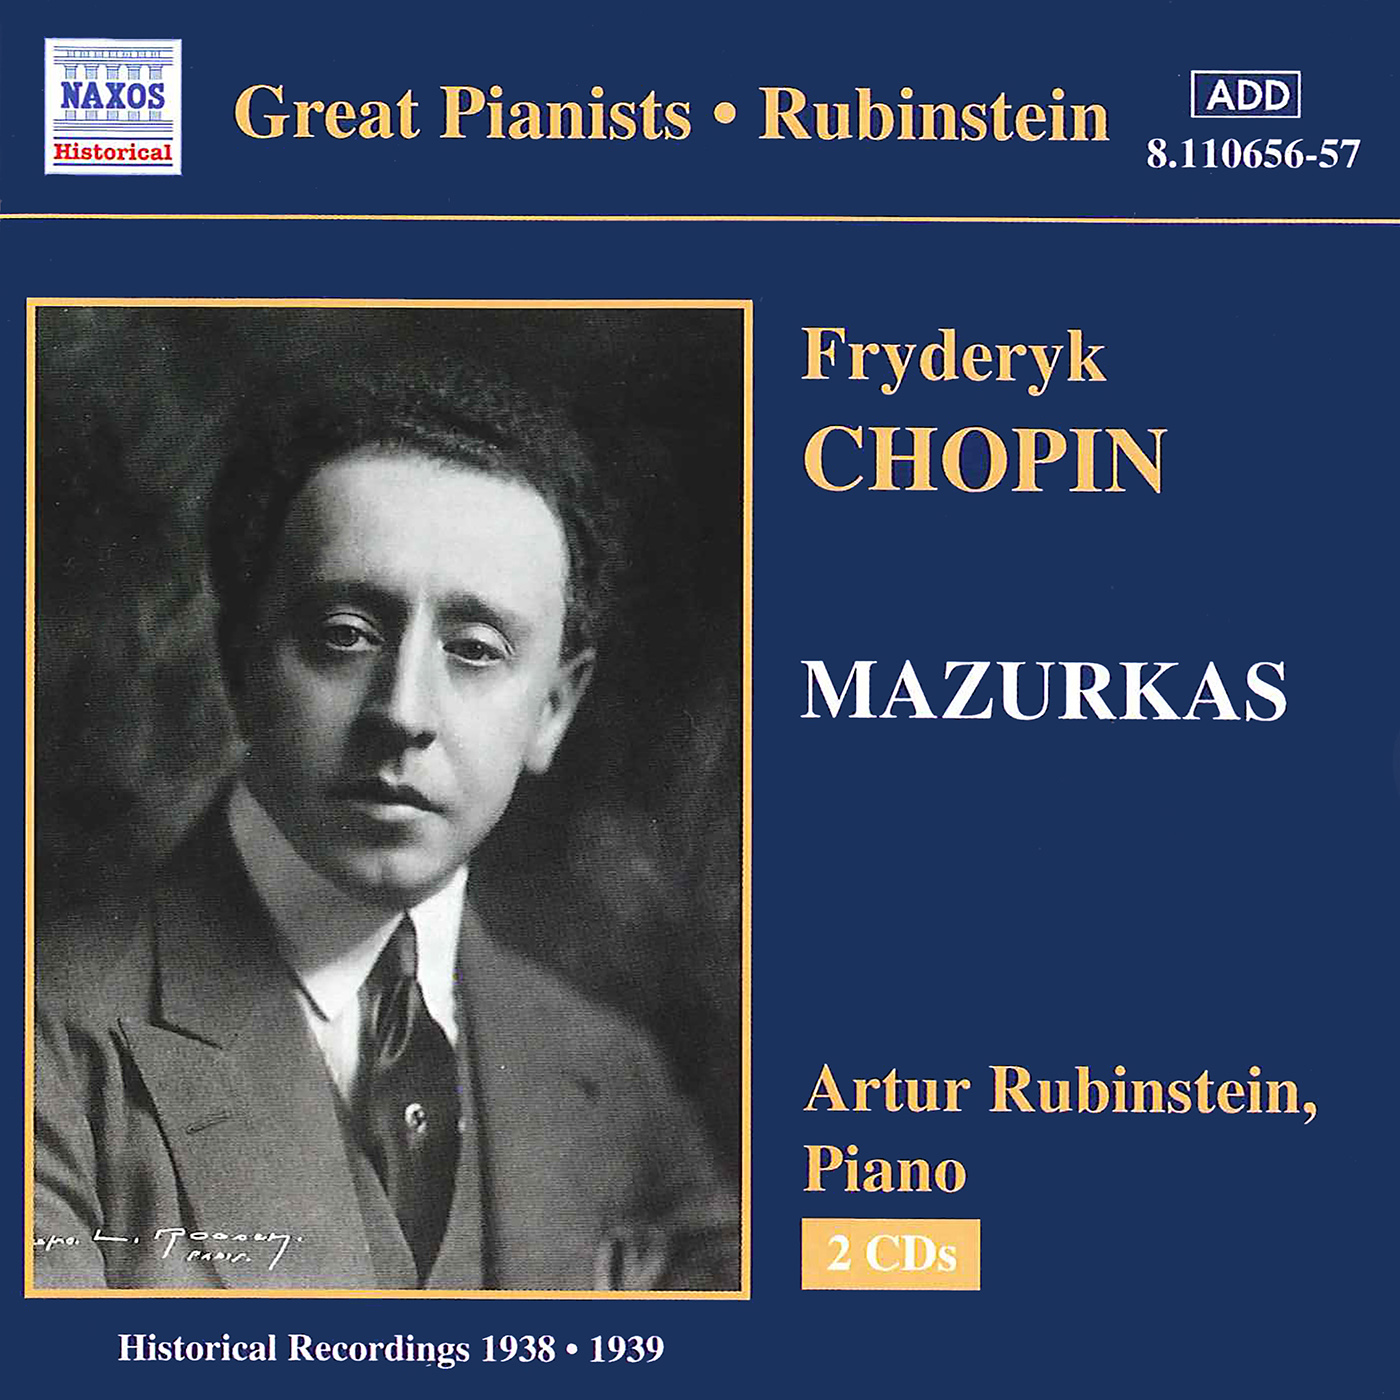 Mazurka No. 30 in G Major, Op. 50, No. 1